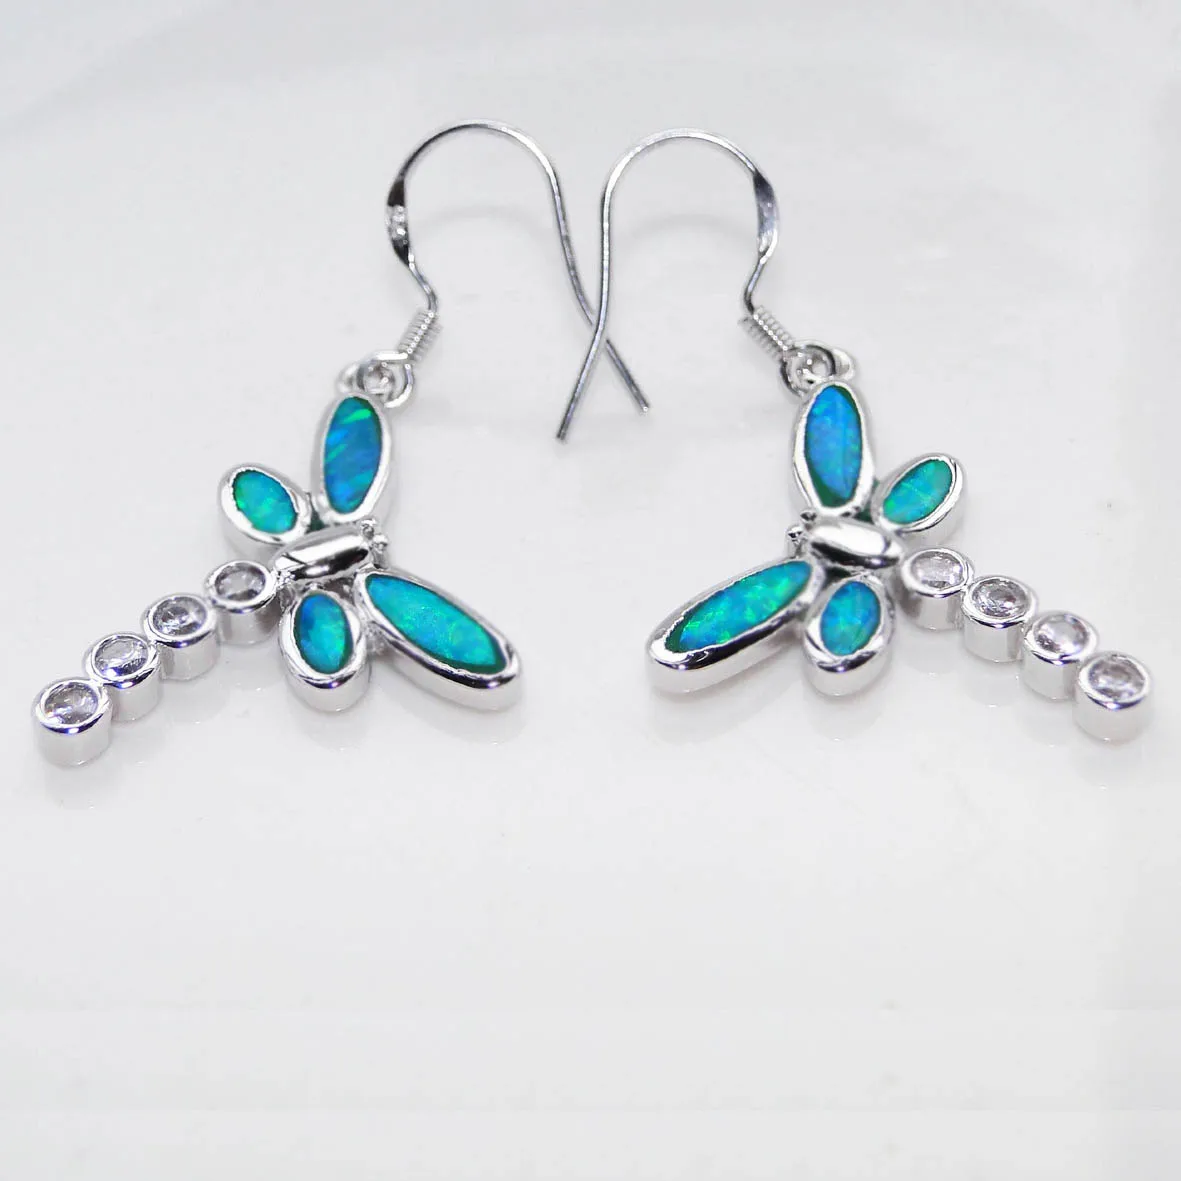 Dragonfly Small Female Earrings Small Blue Opal Earrings Women's Fashions